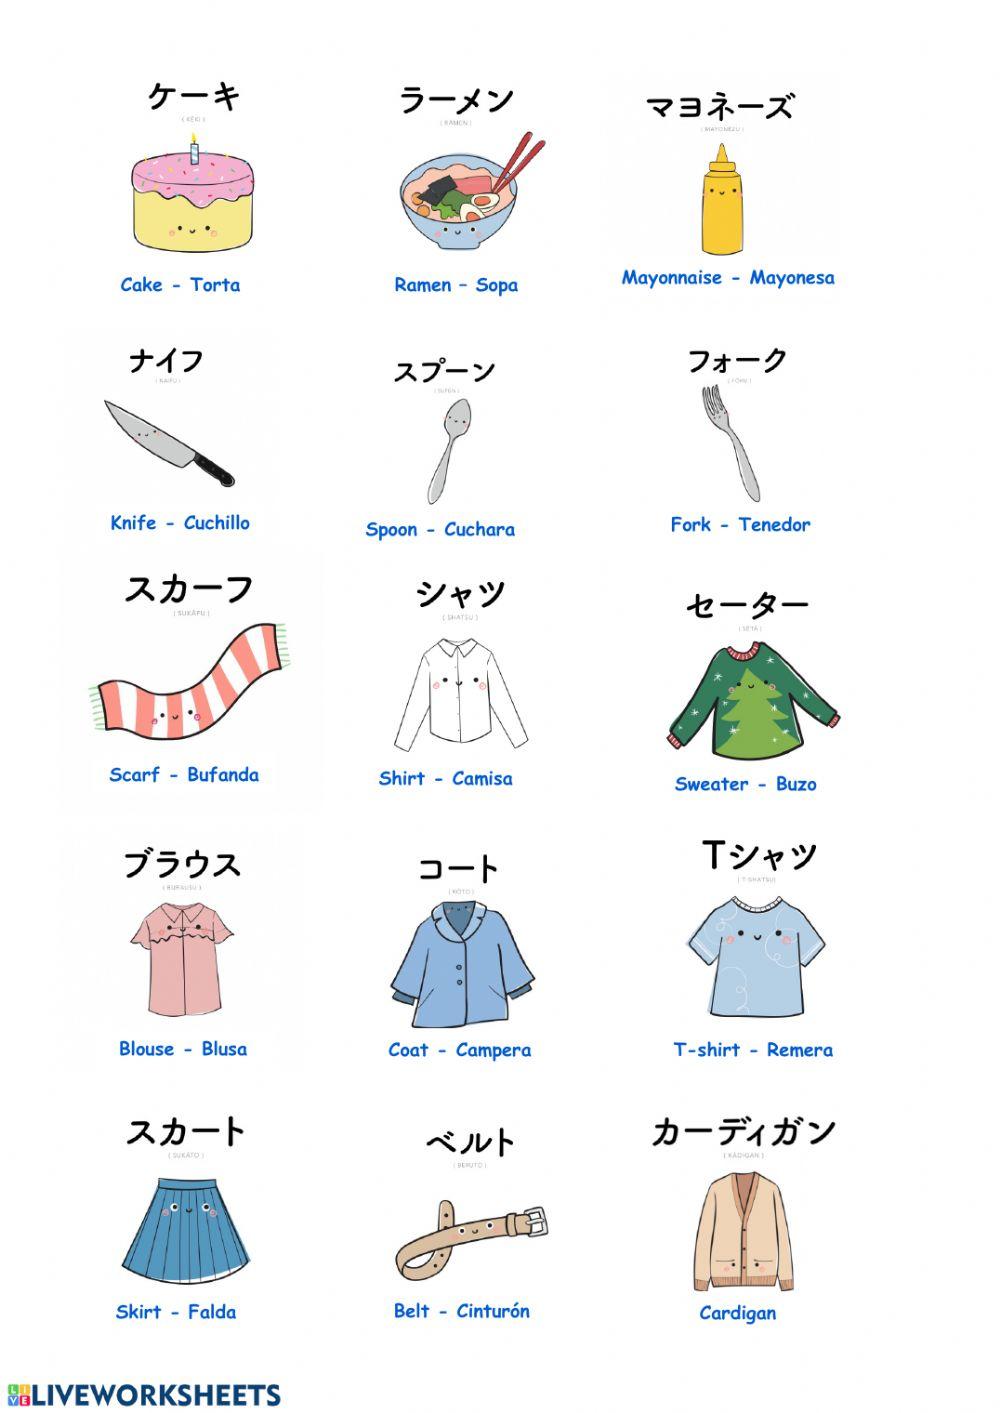 Objetos en japonés